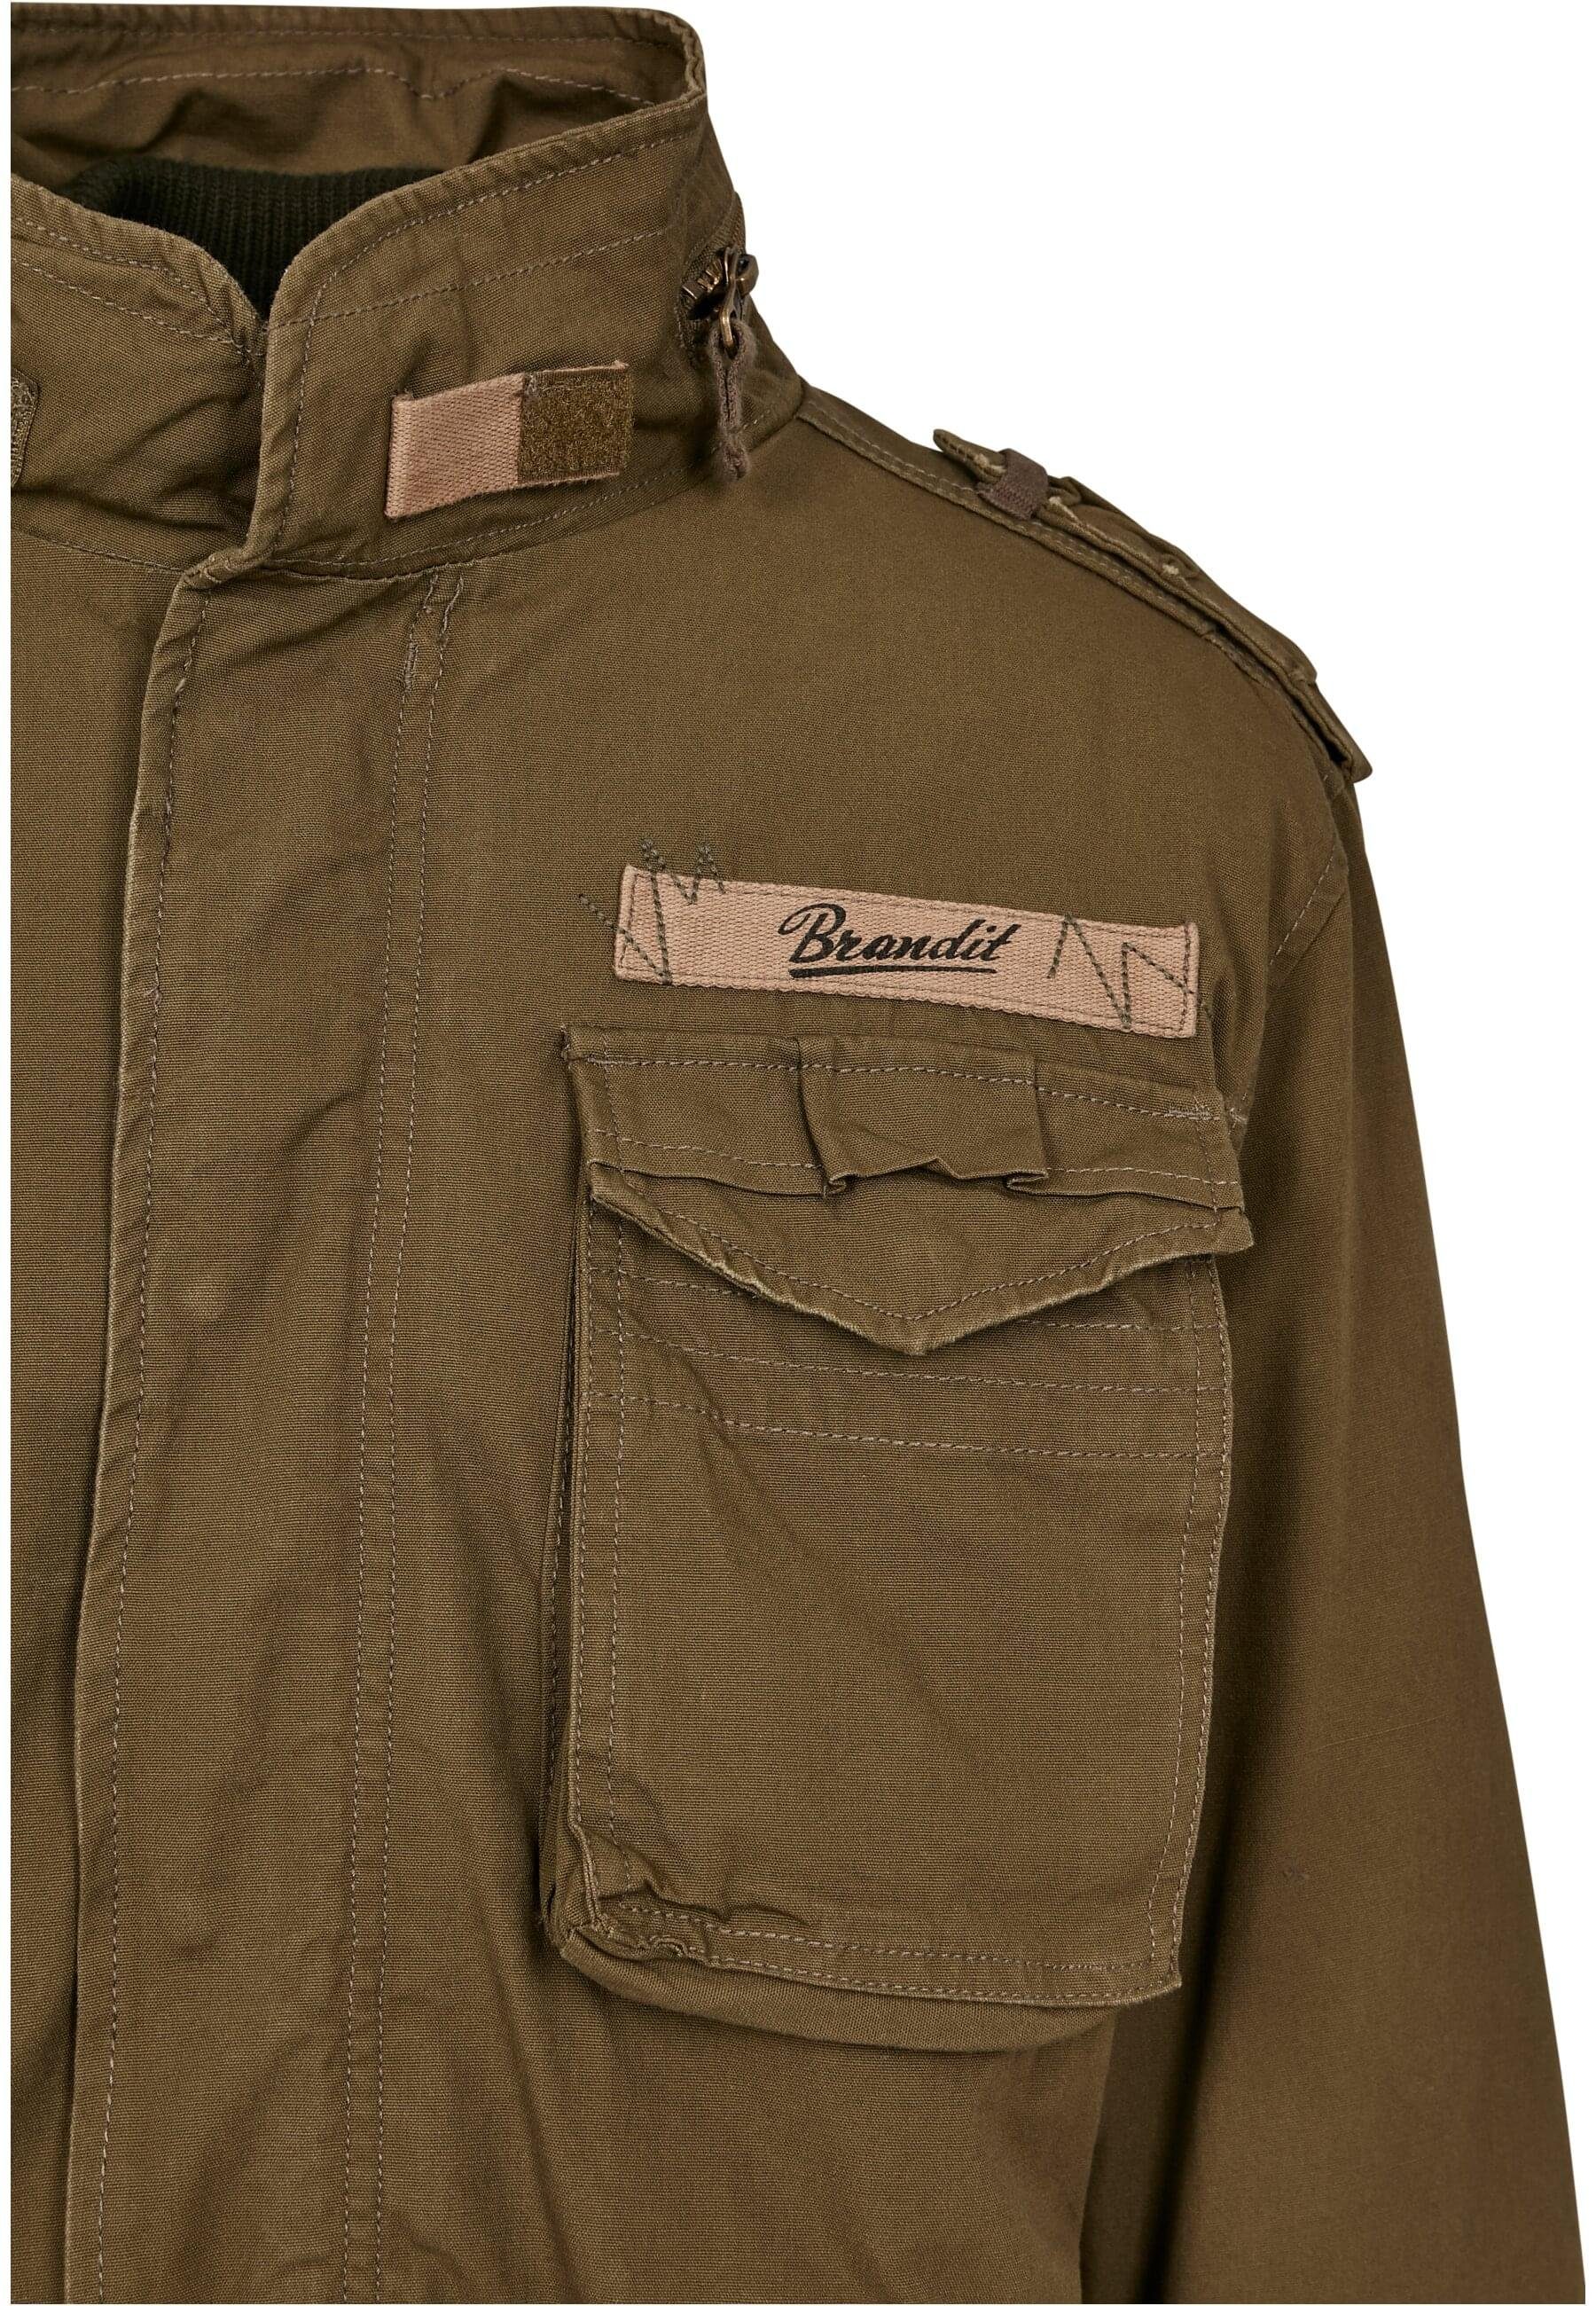 Herren Wintermantel Giant Jacket olive Brandit M-65